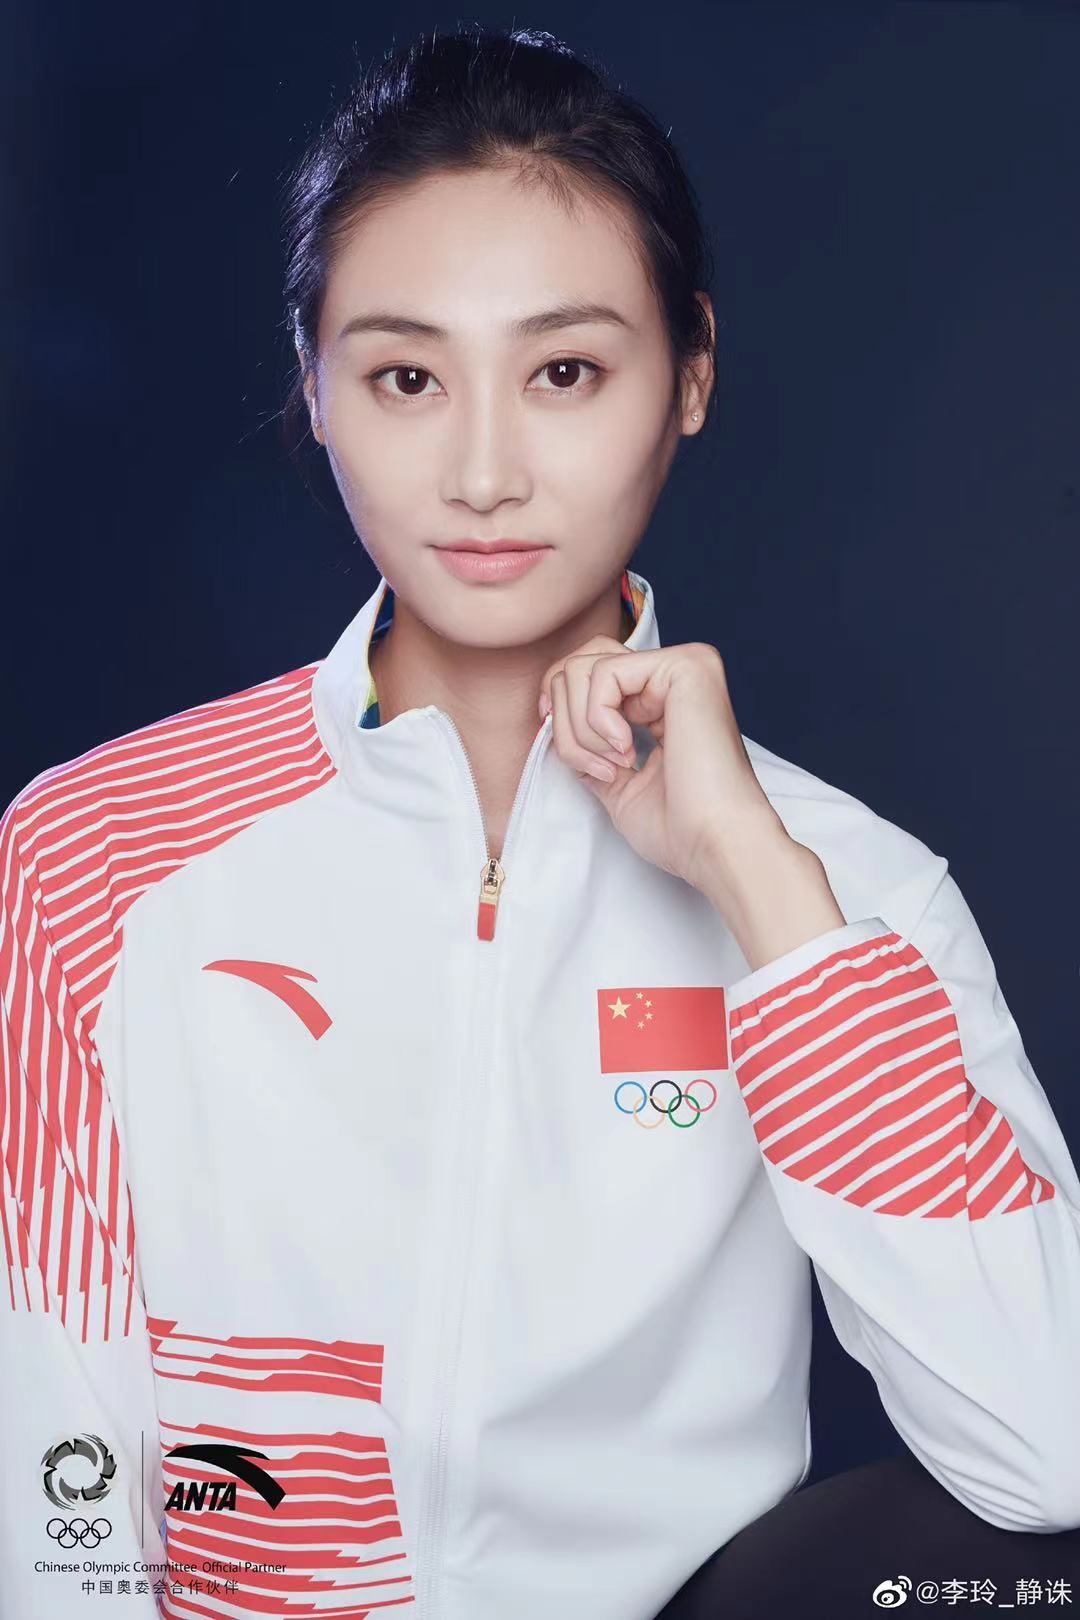 四届奥运谢幕,32岁的李玲:接受自己的不足,并不气馁